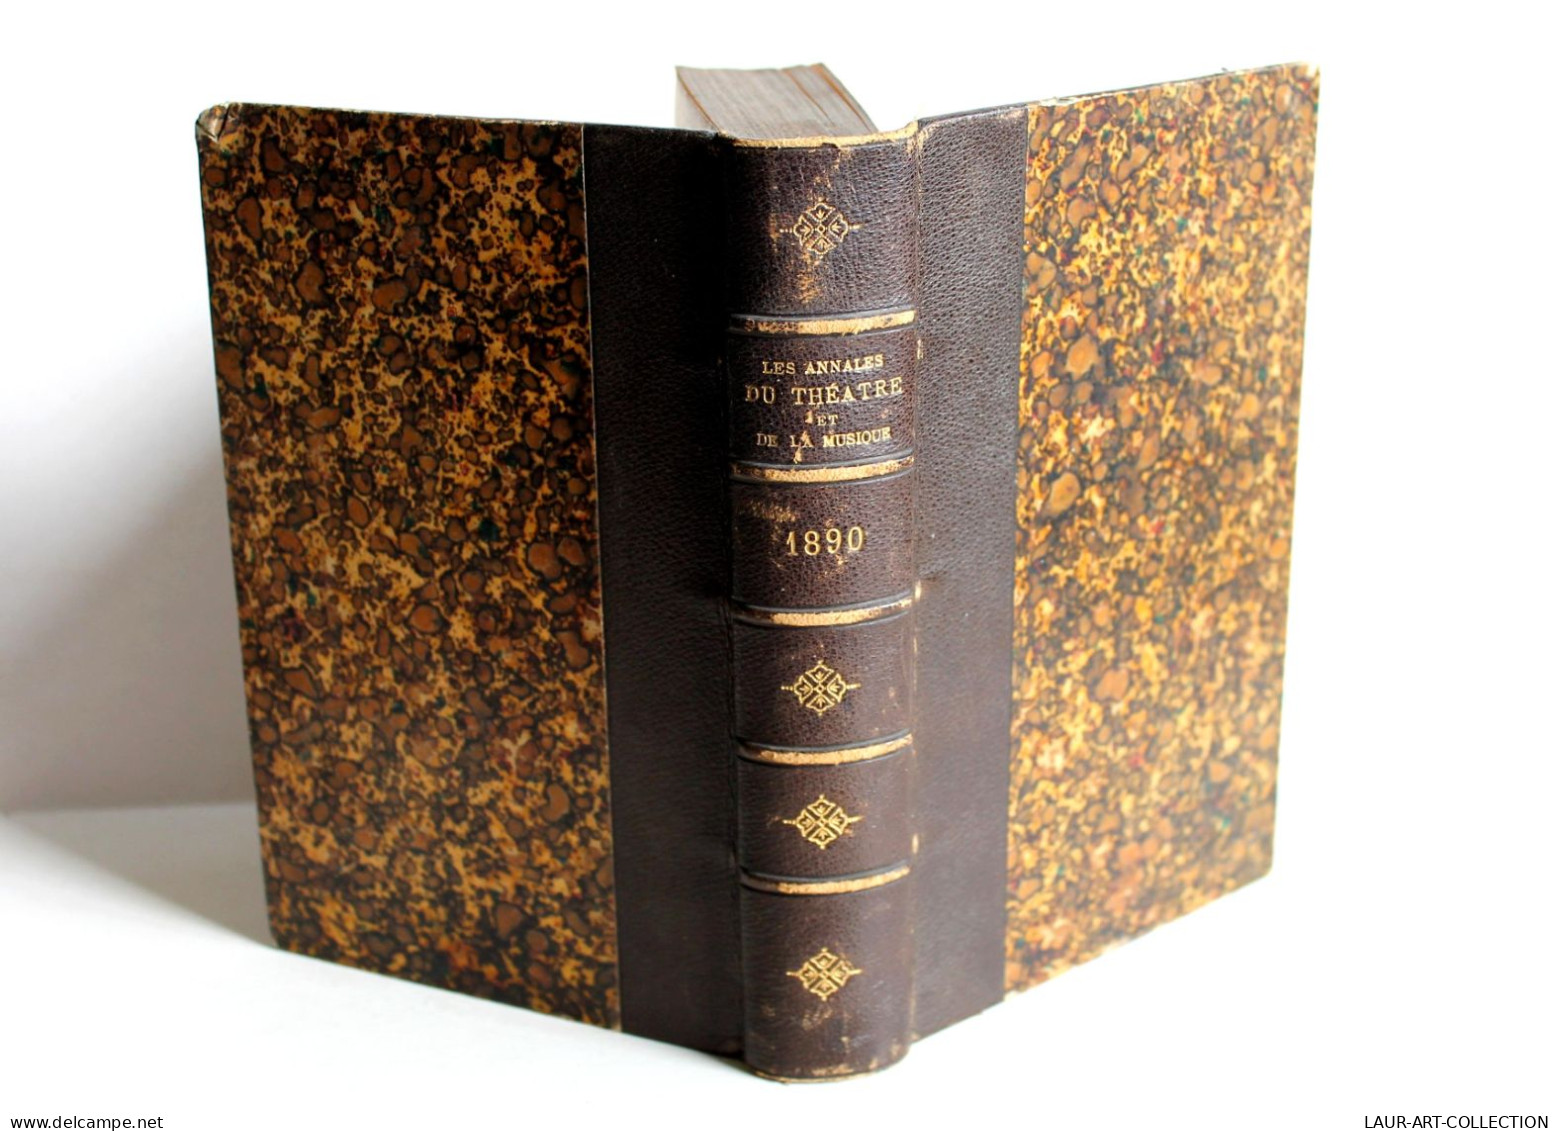 ANNALES DU THEATRE ET DE LA MUSIQUE De NOEL & STOULLIG + PREFACE, 16e ANNEE 1891 / ANCIEN LIVRE XIXe SIECLE (1803.52) - French Authors